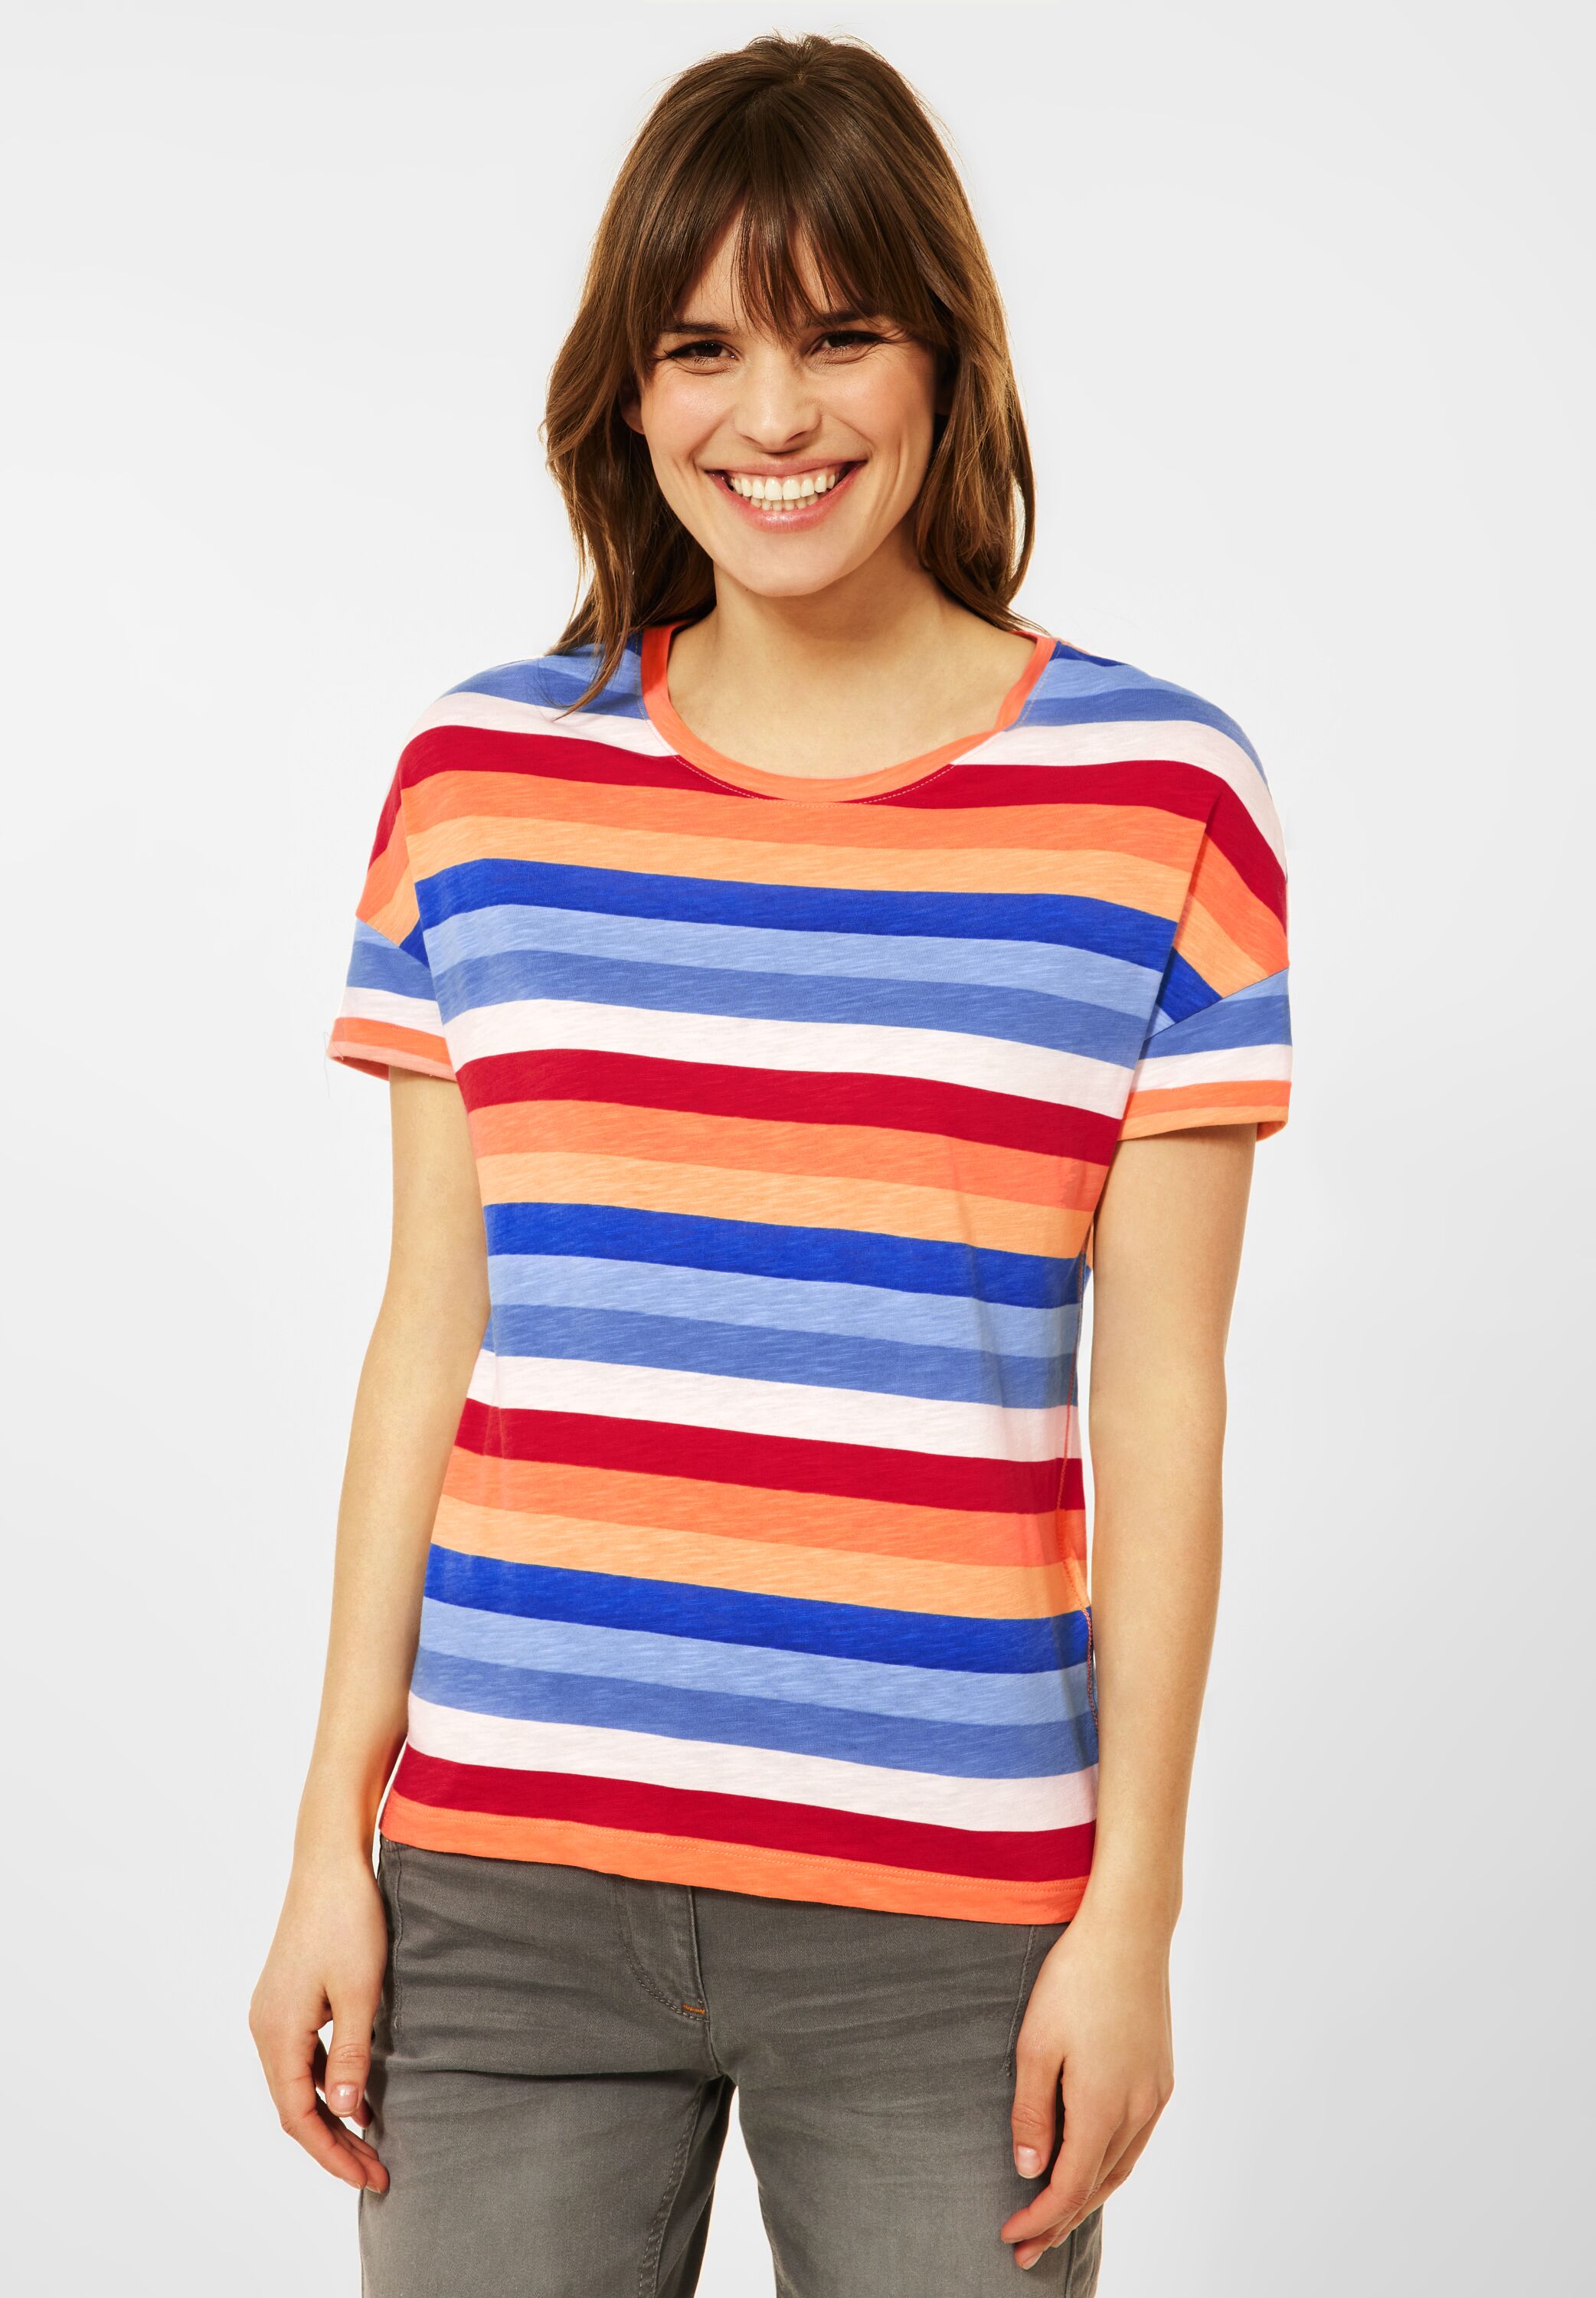 Sommer Shirt T-Shirt mit Streifen Muster bunt b316360-30125 NEU CECIL